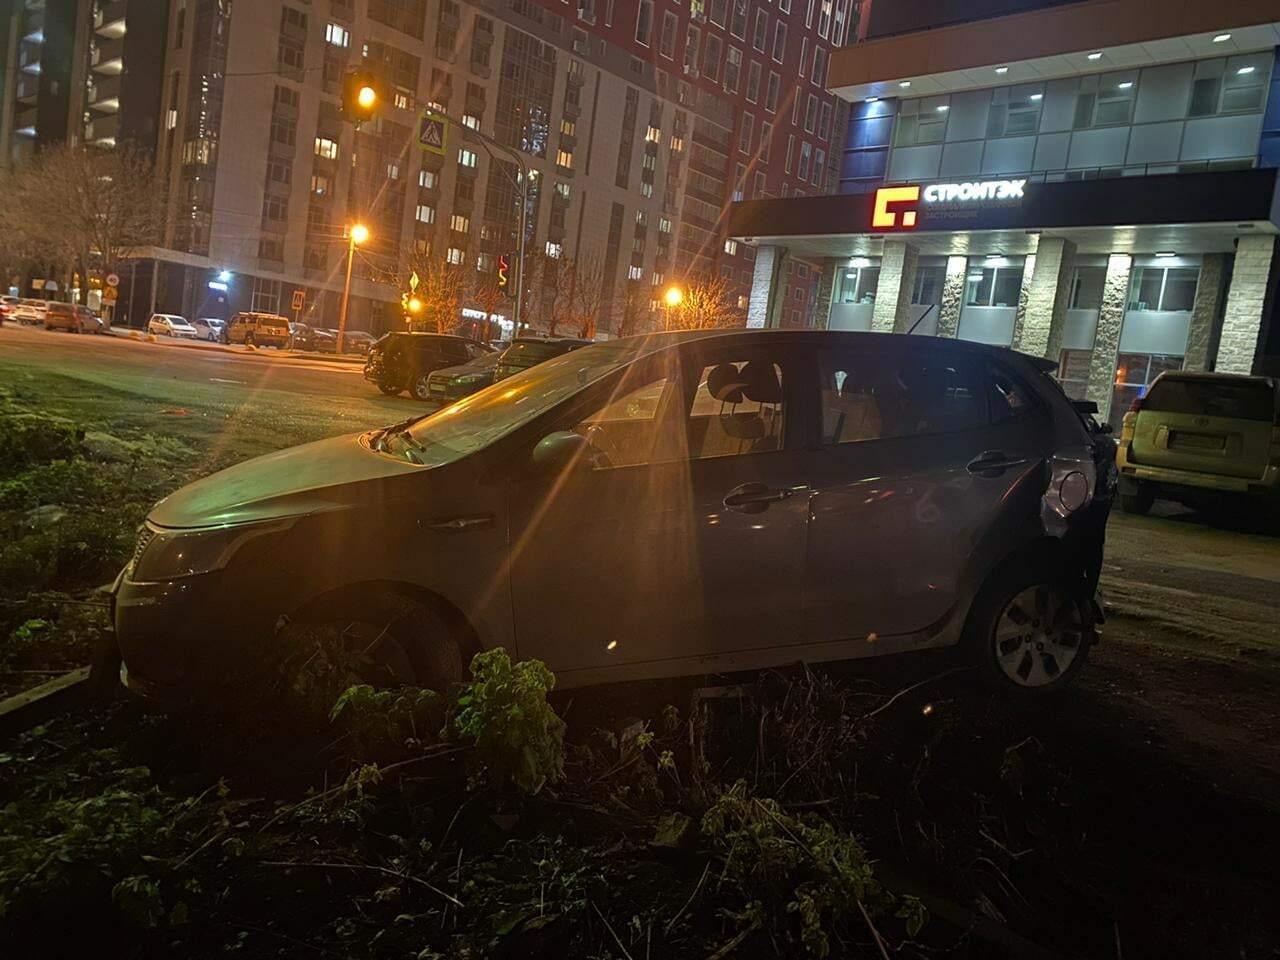 Гражданин сидоров припарковал свой автомобиль на детской